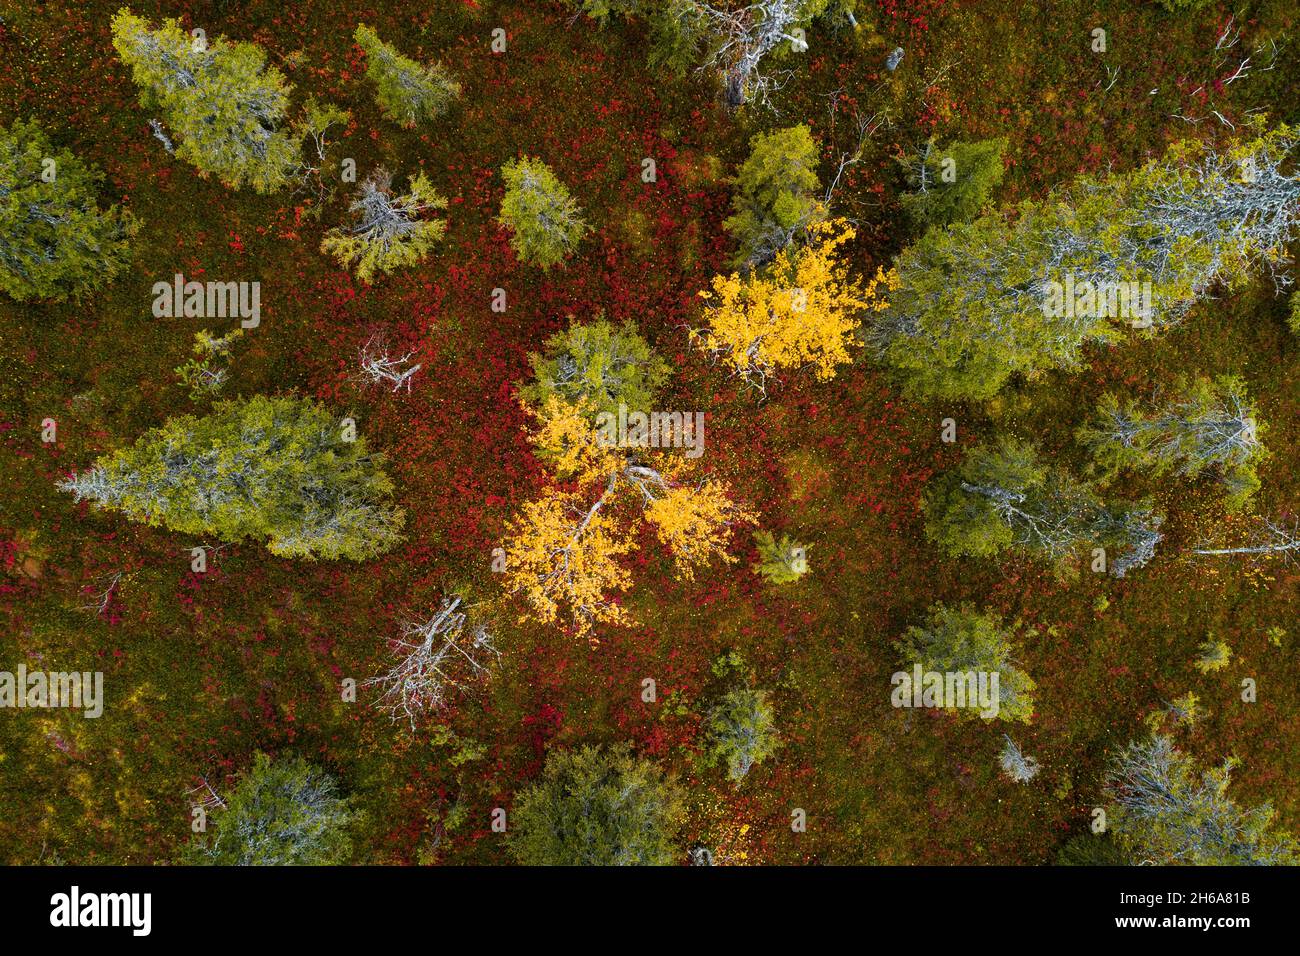 Une vue aérienne du feuillage d'automne coloré dans le parc national de Riisitunturi avec une belle forêt de taïga et des Birch jaune vif dans le nord de la Finlande. Banque D'Images